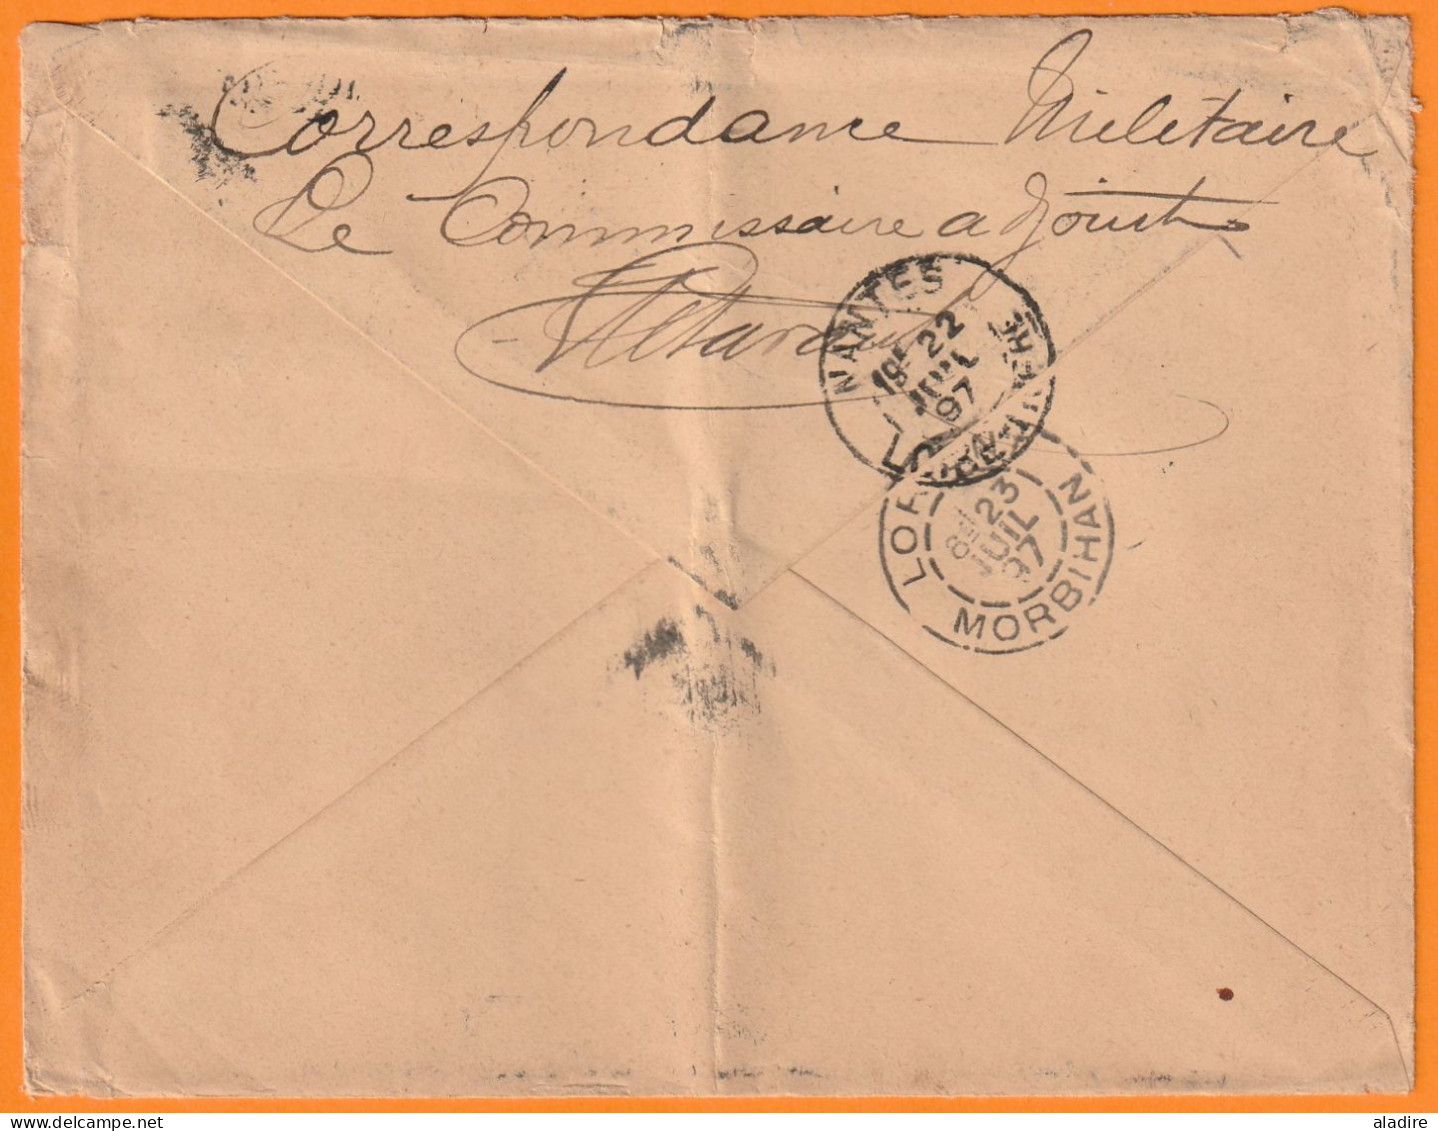 1897 - 15 C Groupe Sur Enveloppe De Saint Louis Du Sénégal Vers Lorient Morbihan - Correspondance Militaire - Ligne J - Covers & Documents